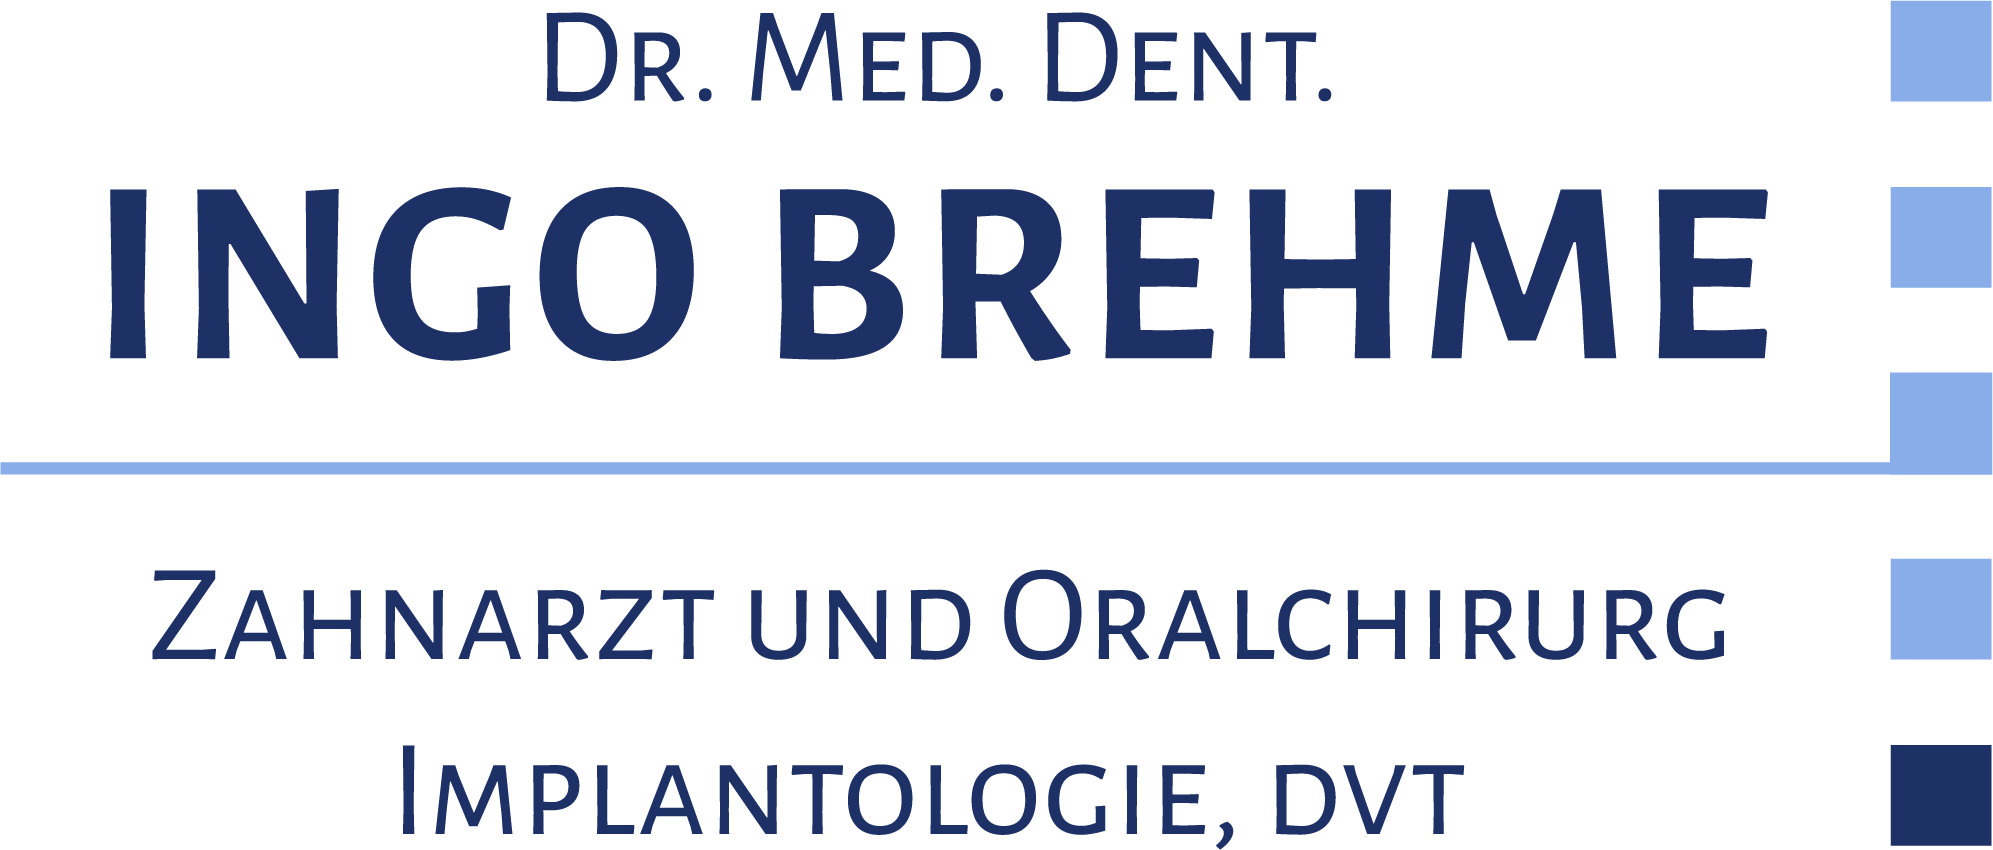 Dr. Ingo Brehme